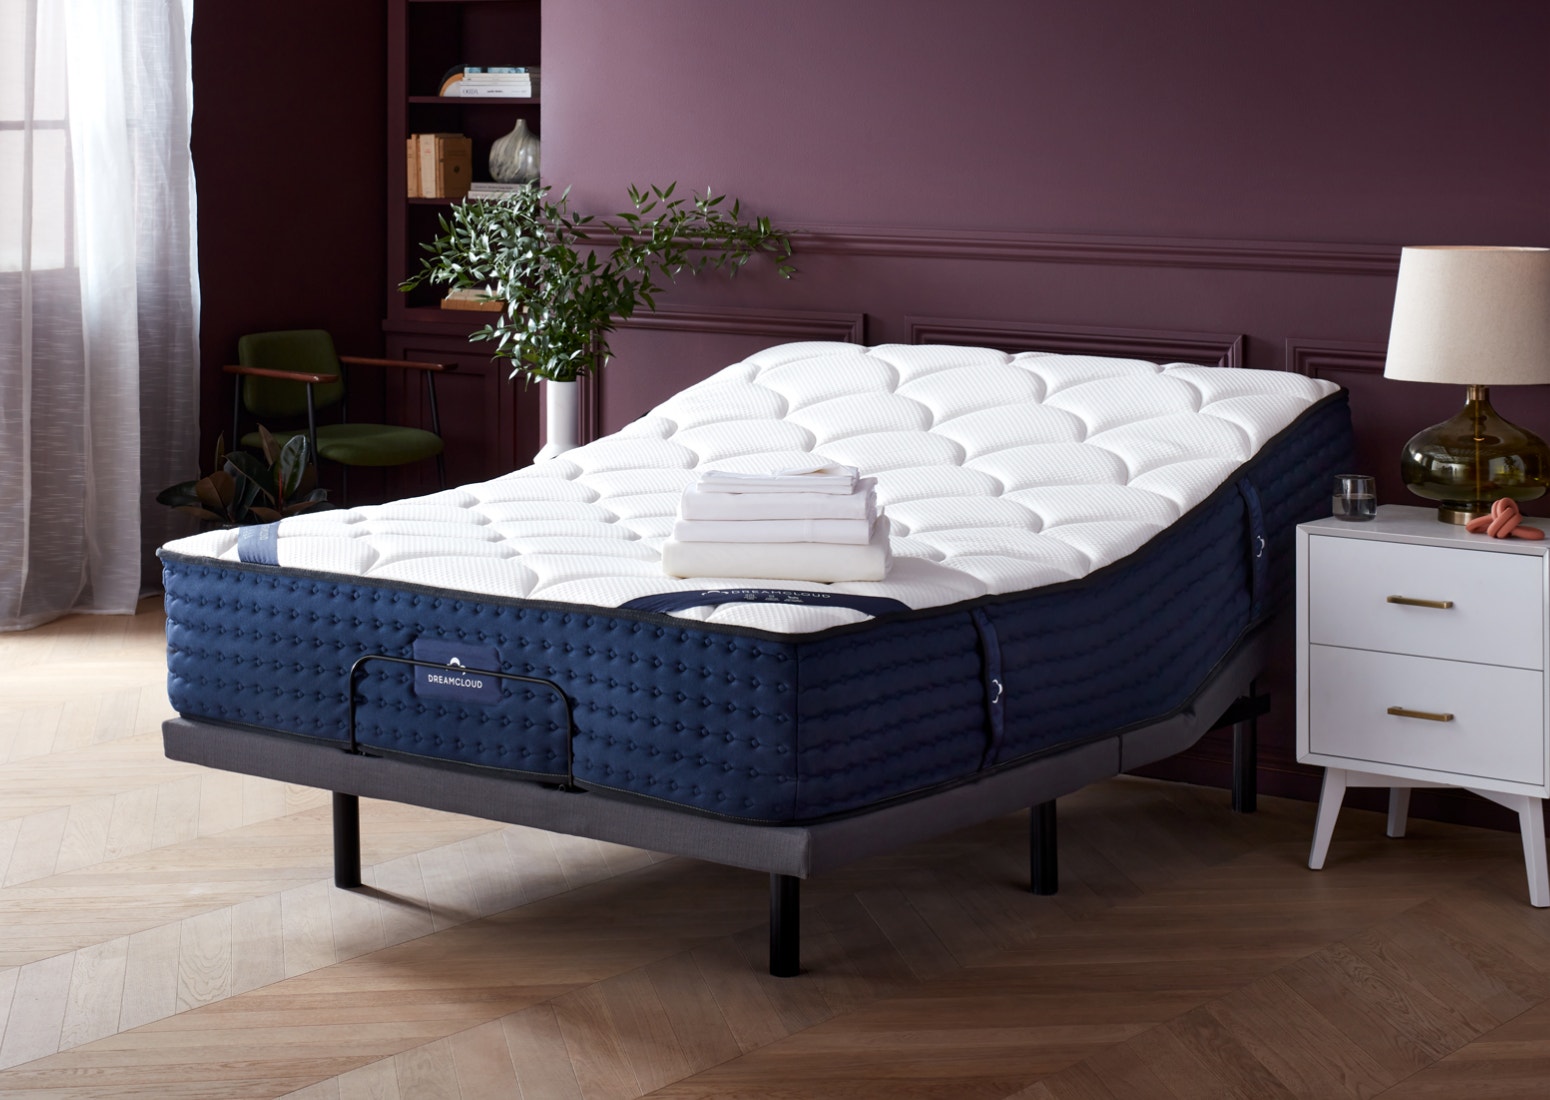 Adjustable Bed Frames Best Luxury, How To Use Adjustable Bed Frame